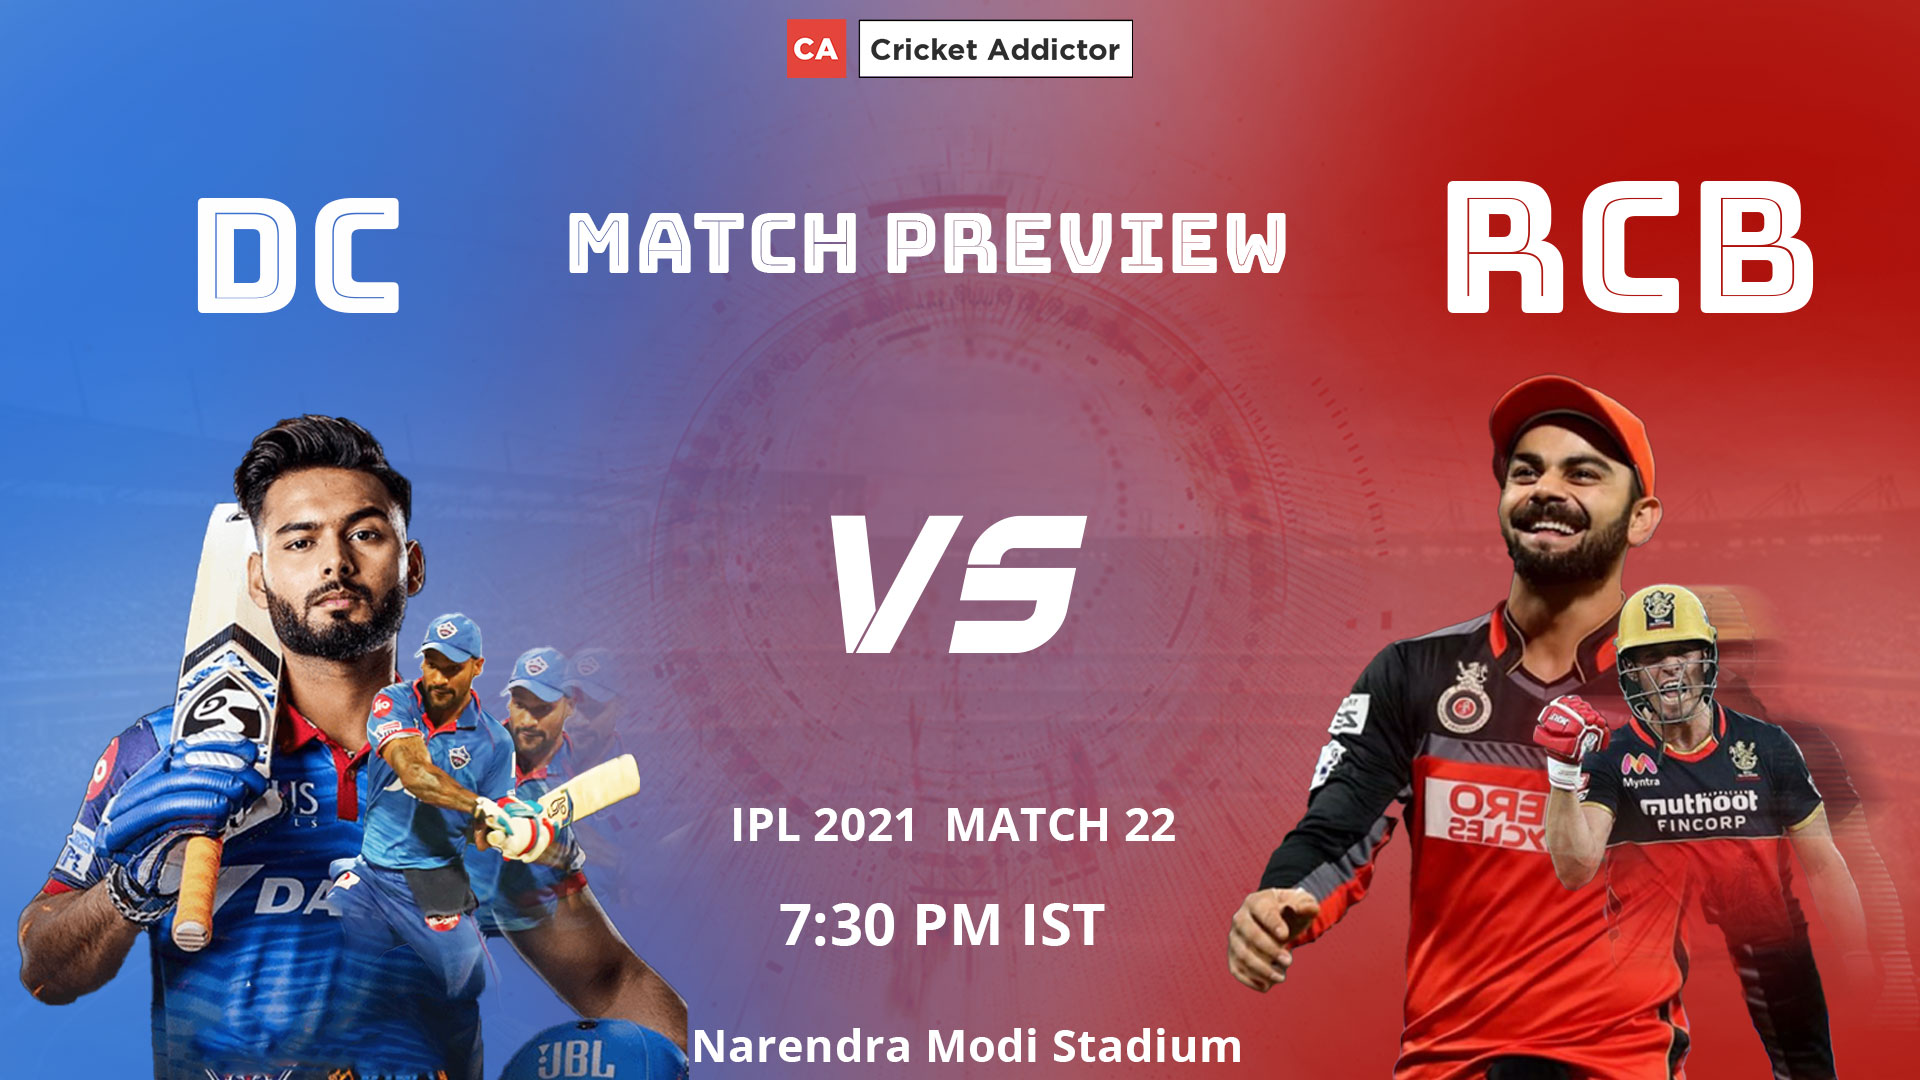 IPL 2021, Delhi Capitals, Royal Challengers Bangalore, Match Preview, DC vs RCB